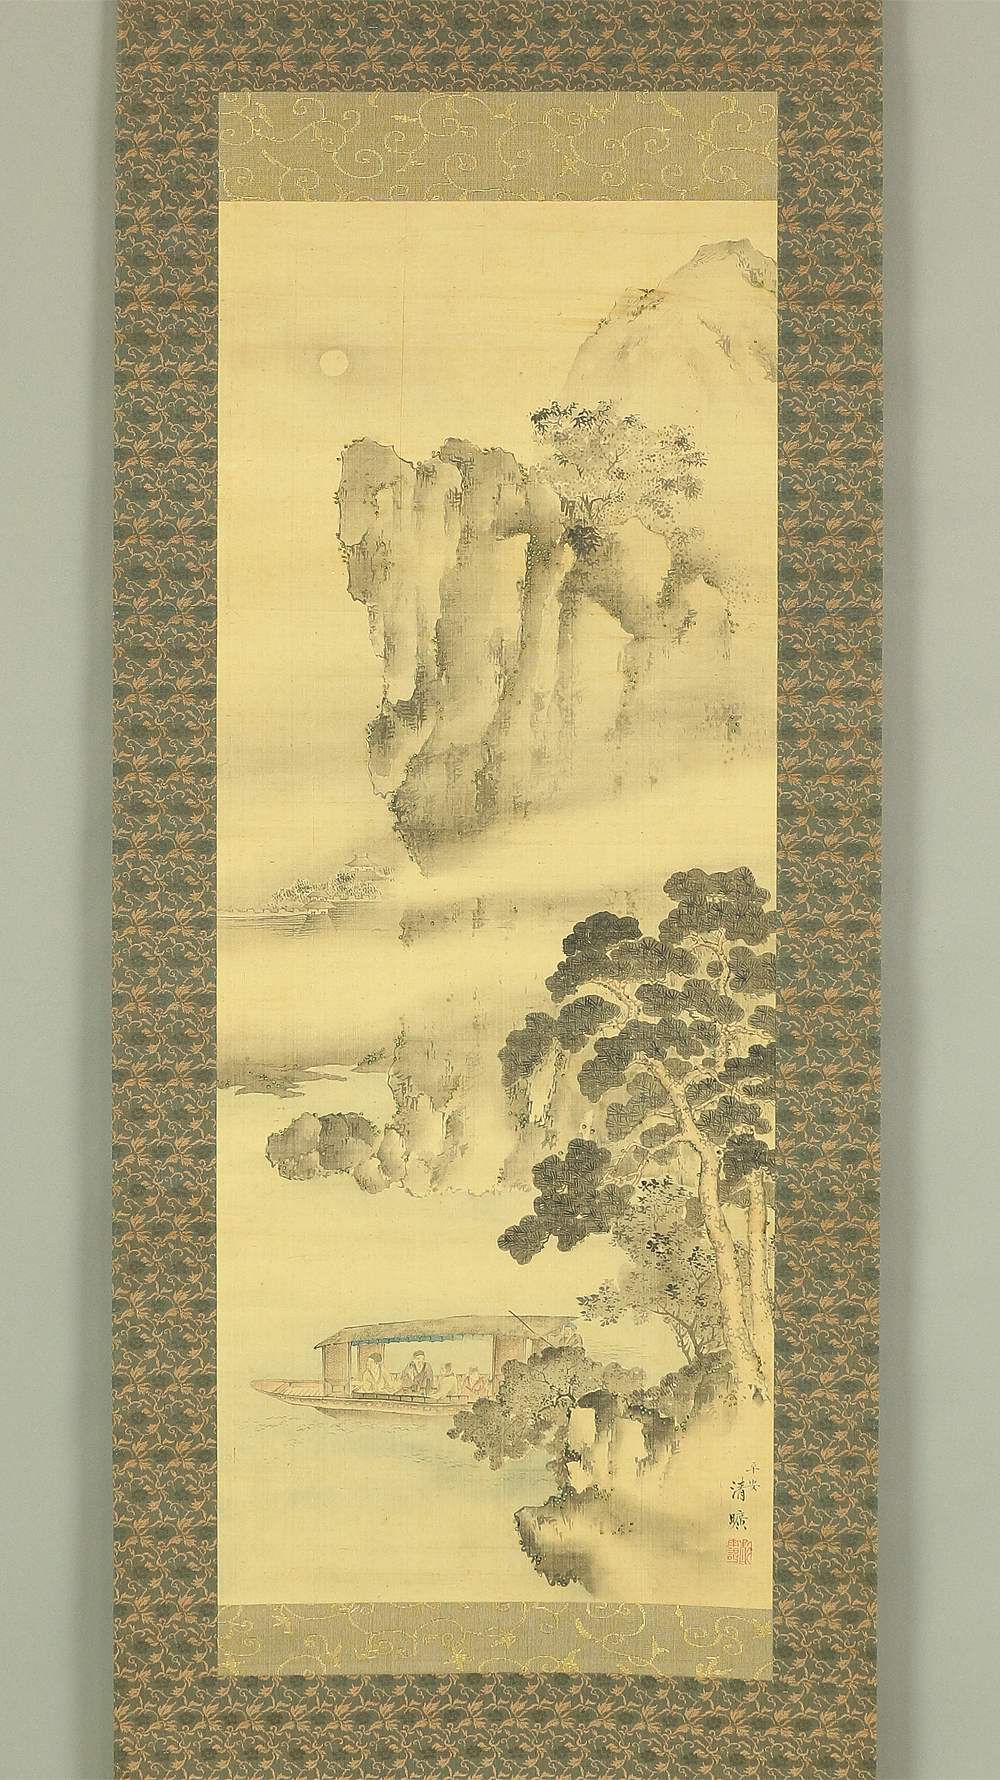 岡島清曠 Okajima Seiko (1828-1877) Japanese art kakejiku kakemono wall hanging  scroll / 赤壁山水 Red Cliff Landscape - Sightseeing Boat under Moon and Cliff  